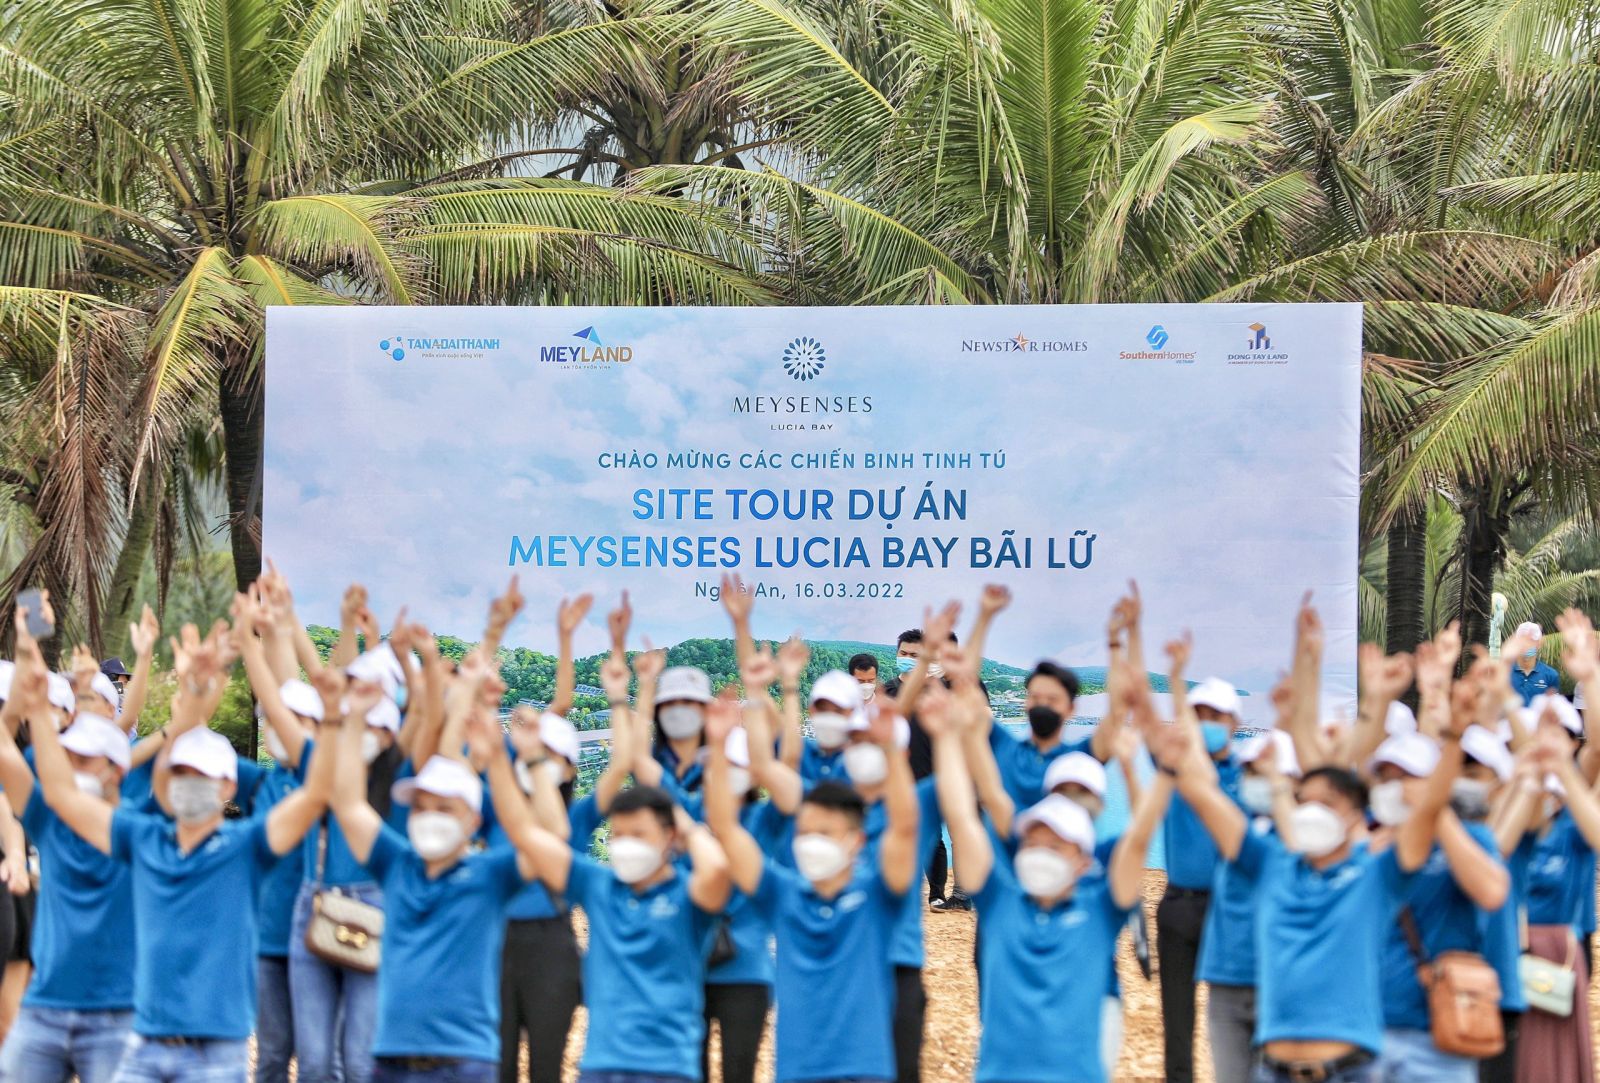 Các chiến binh tinh tú đến từ NewstarHomes, SourthernHomes và Đông Tây Land đã hội tụ tại MeySenses Lucia Bay Bãi Lữ để tham gia Site tour dự án